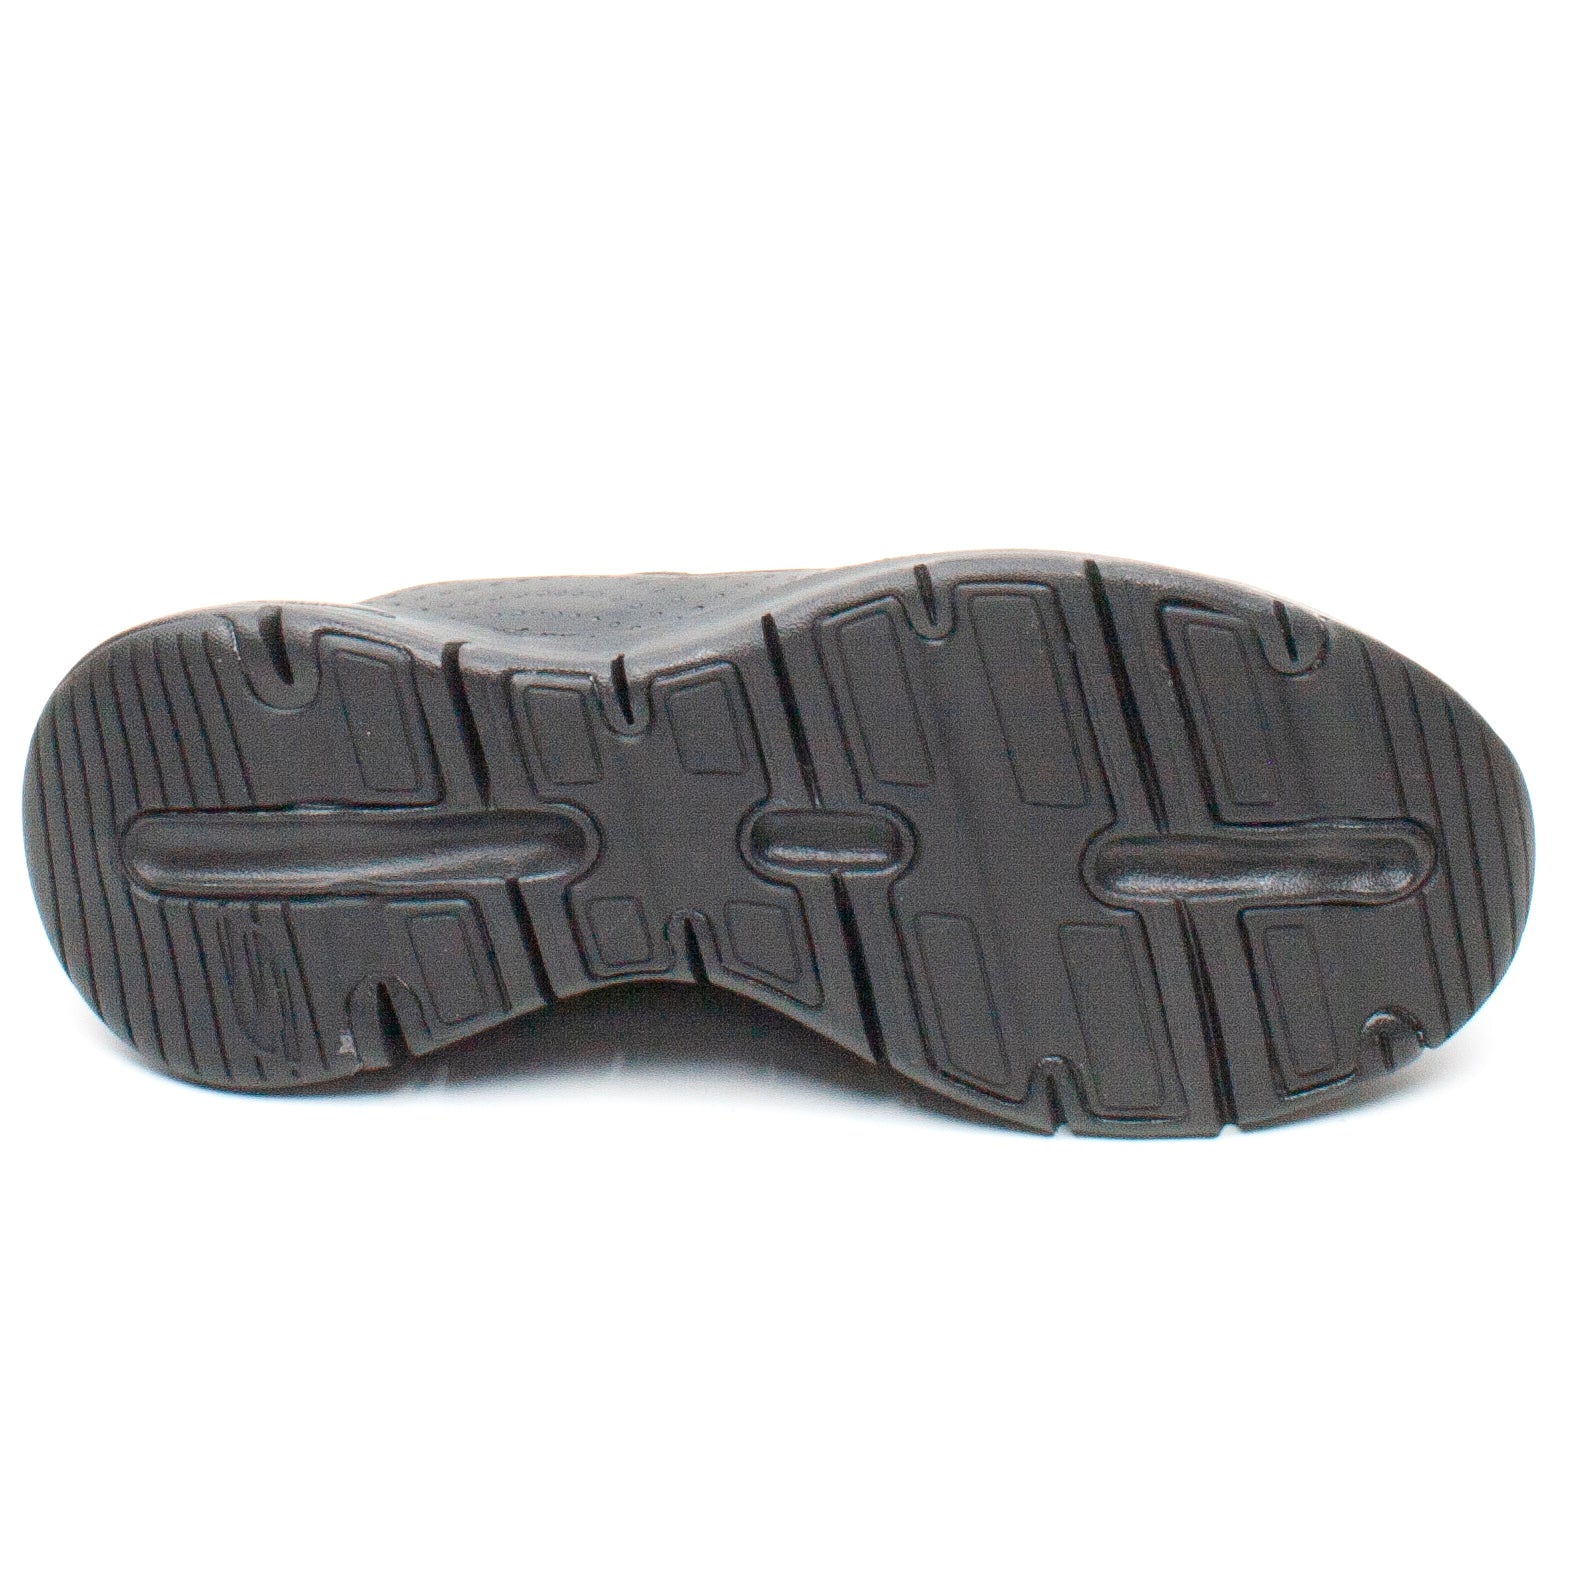 Skechers Pantofi dama sport Arch Fit 149057 talpa neagra negru ID2857-NG